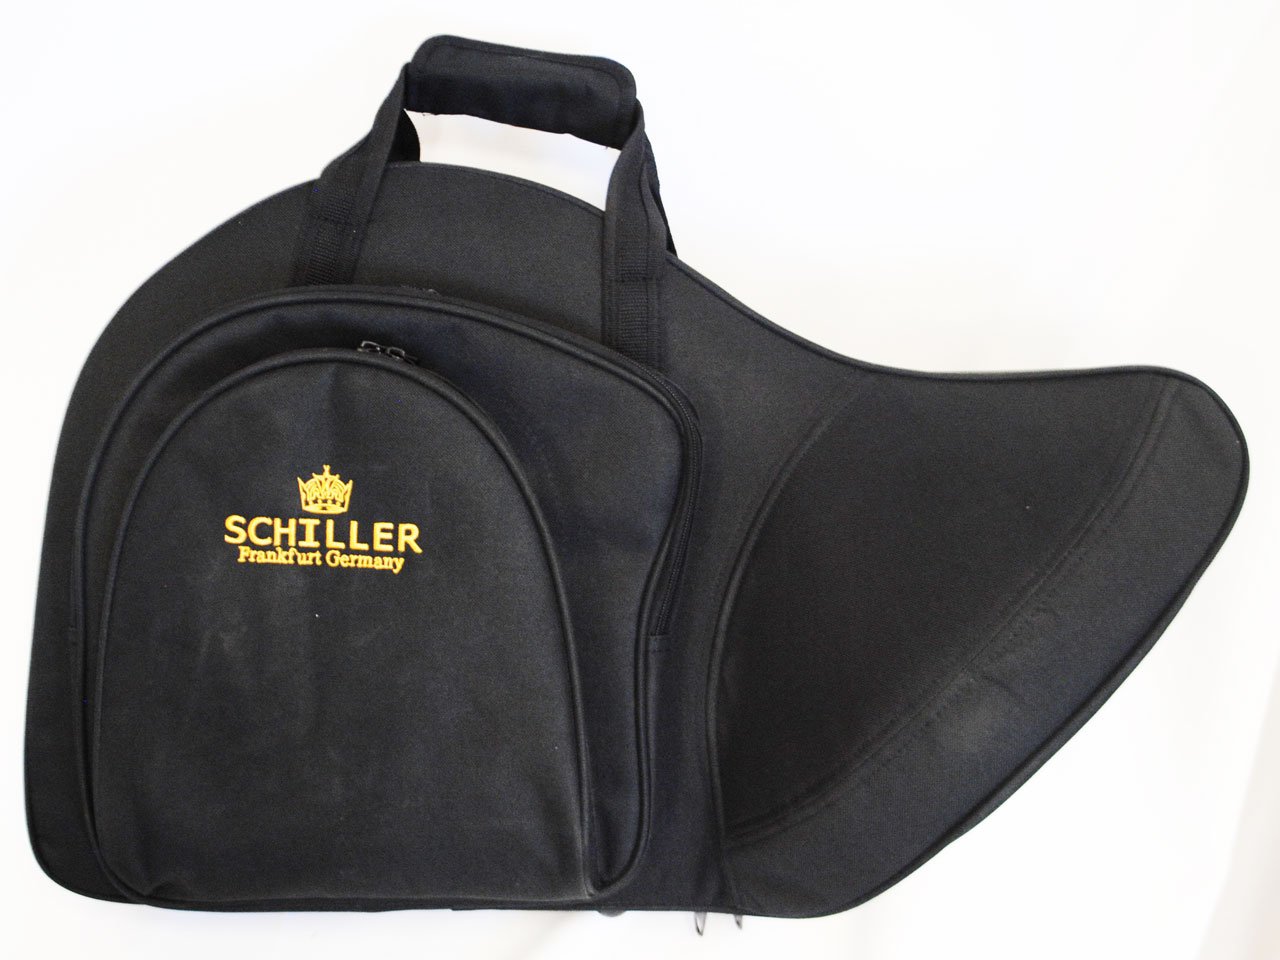 Schiller Deluxe French Horn Case